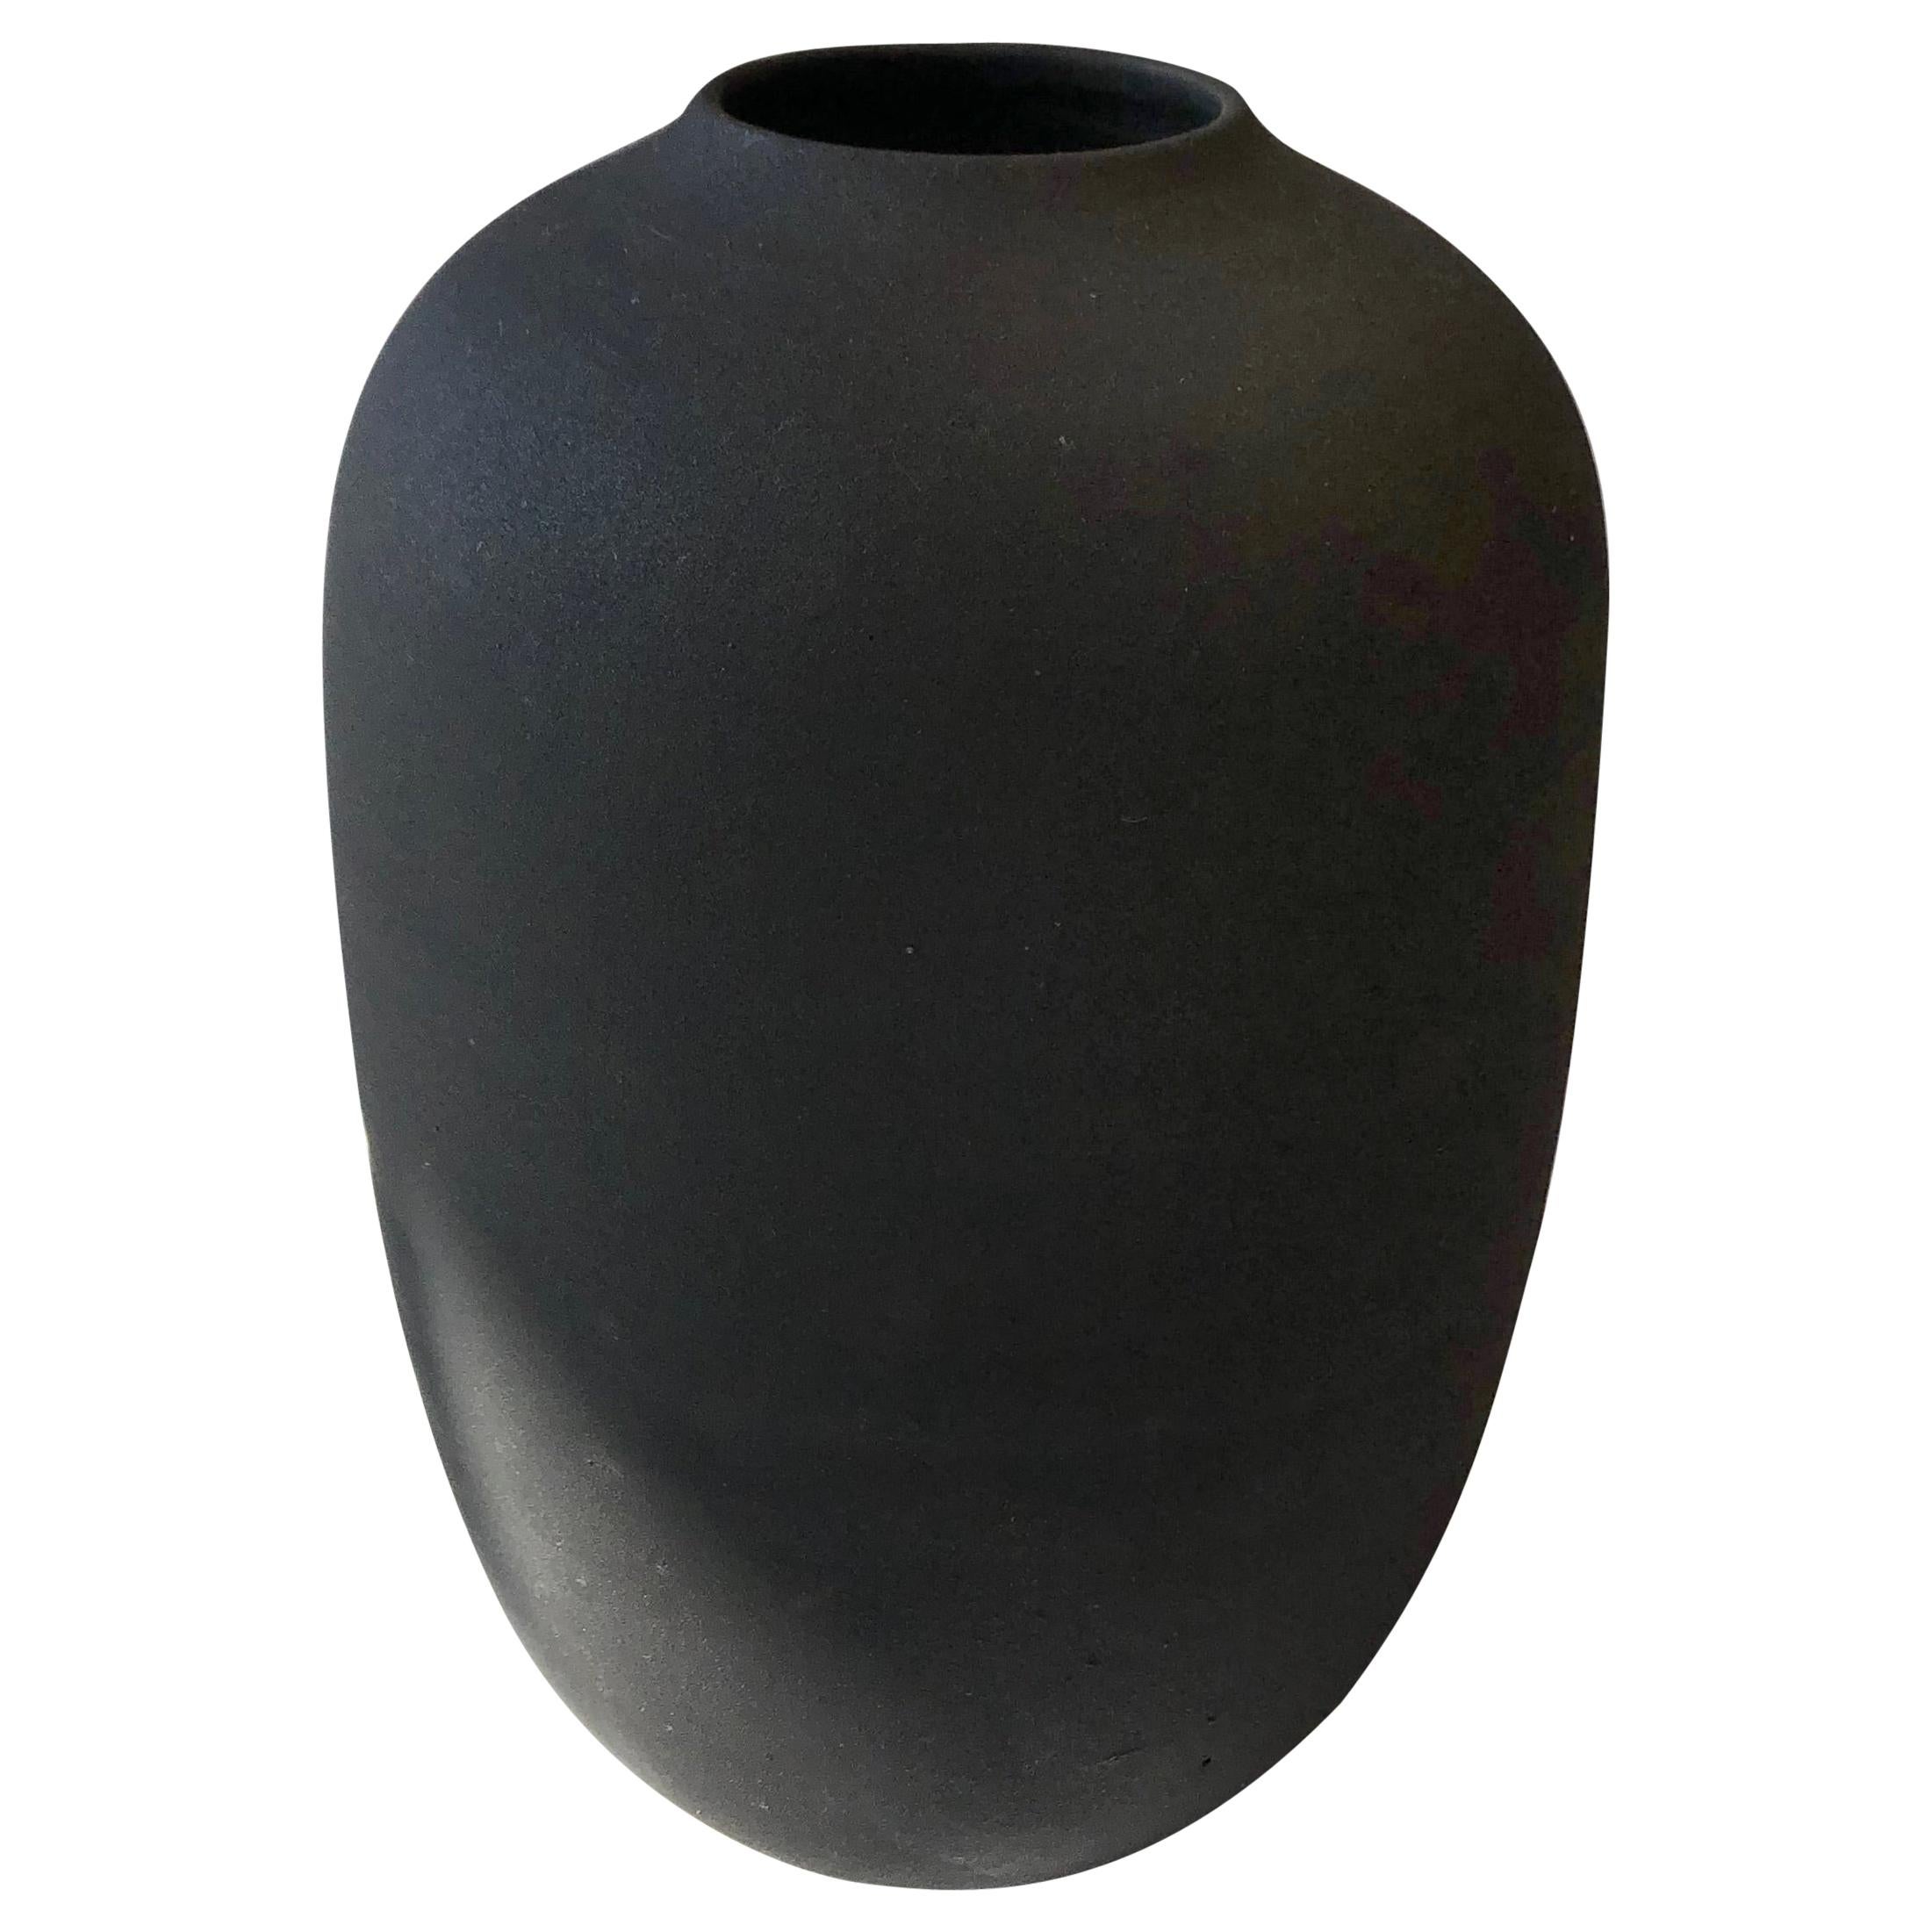 Handmade Small Ceramic Vase in Black, in Stock